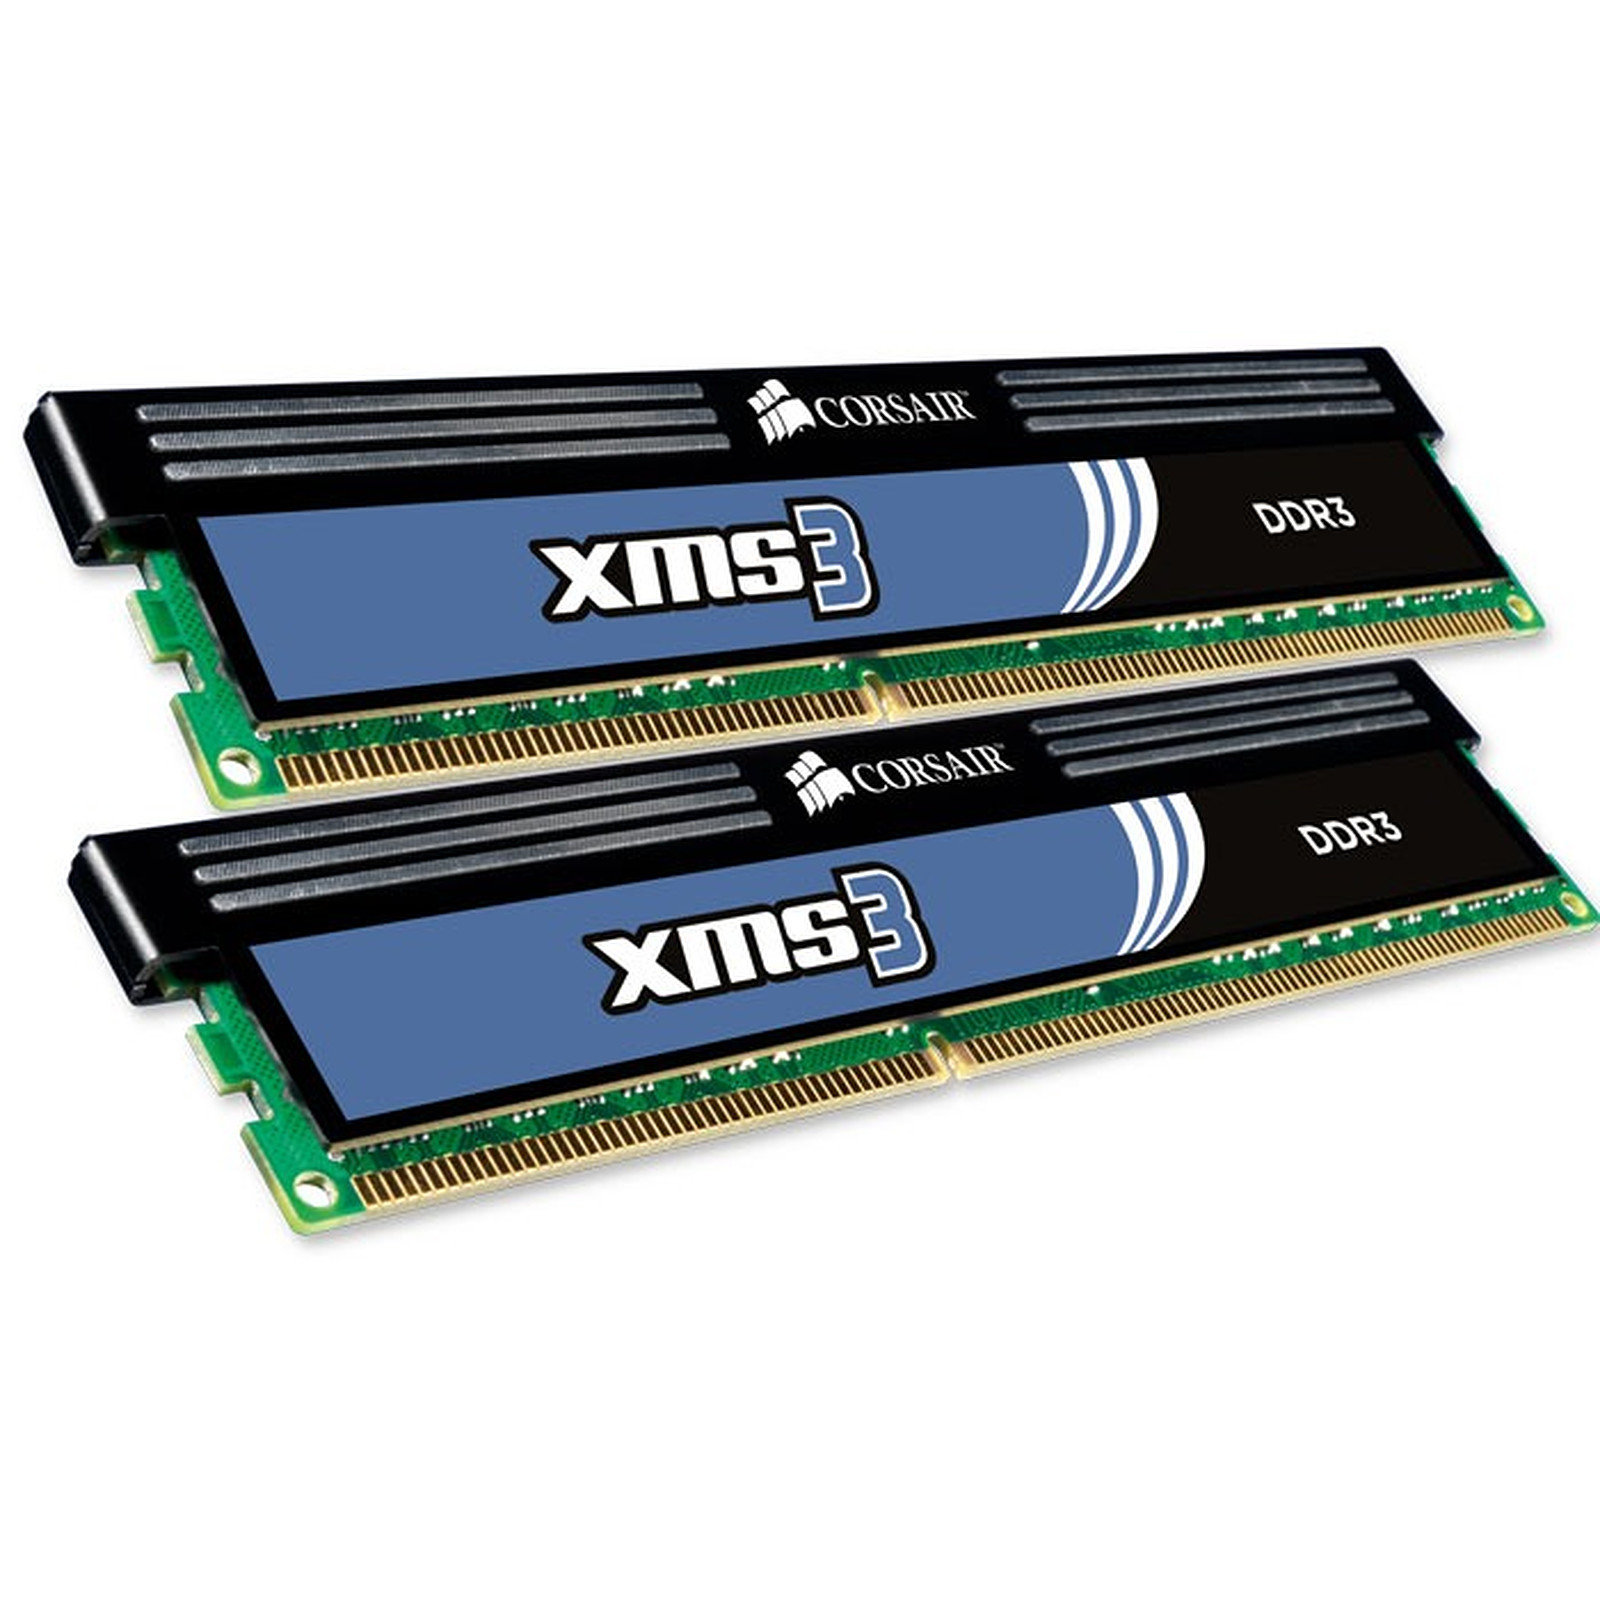 Corsair XMS3 8 Go (2x 4 Go) DDR3 1333 MHz CL9 - Memoire PC Corsair